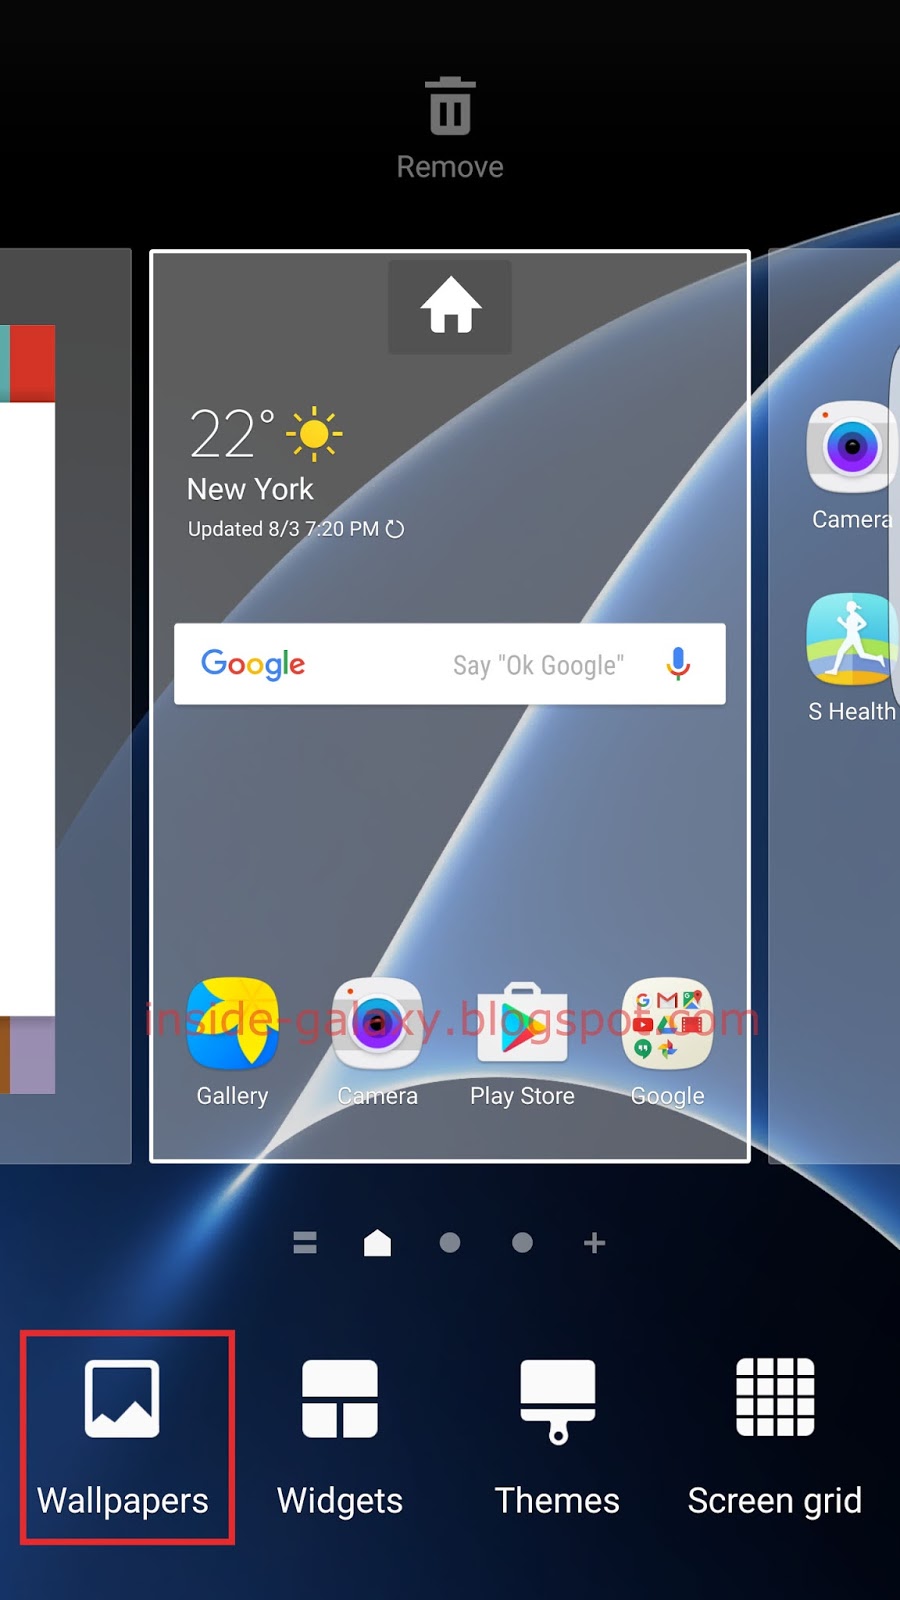 Add Widgets On Galaxy S7 - HD Wallpaper 